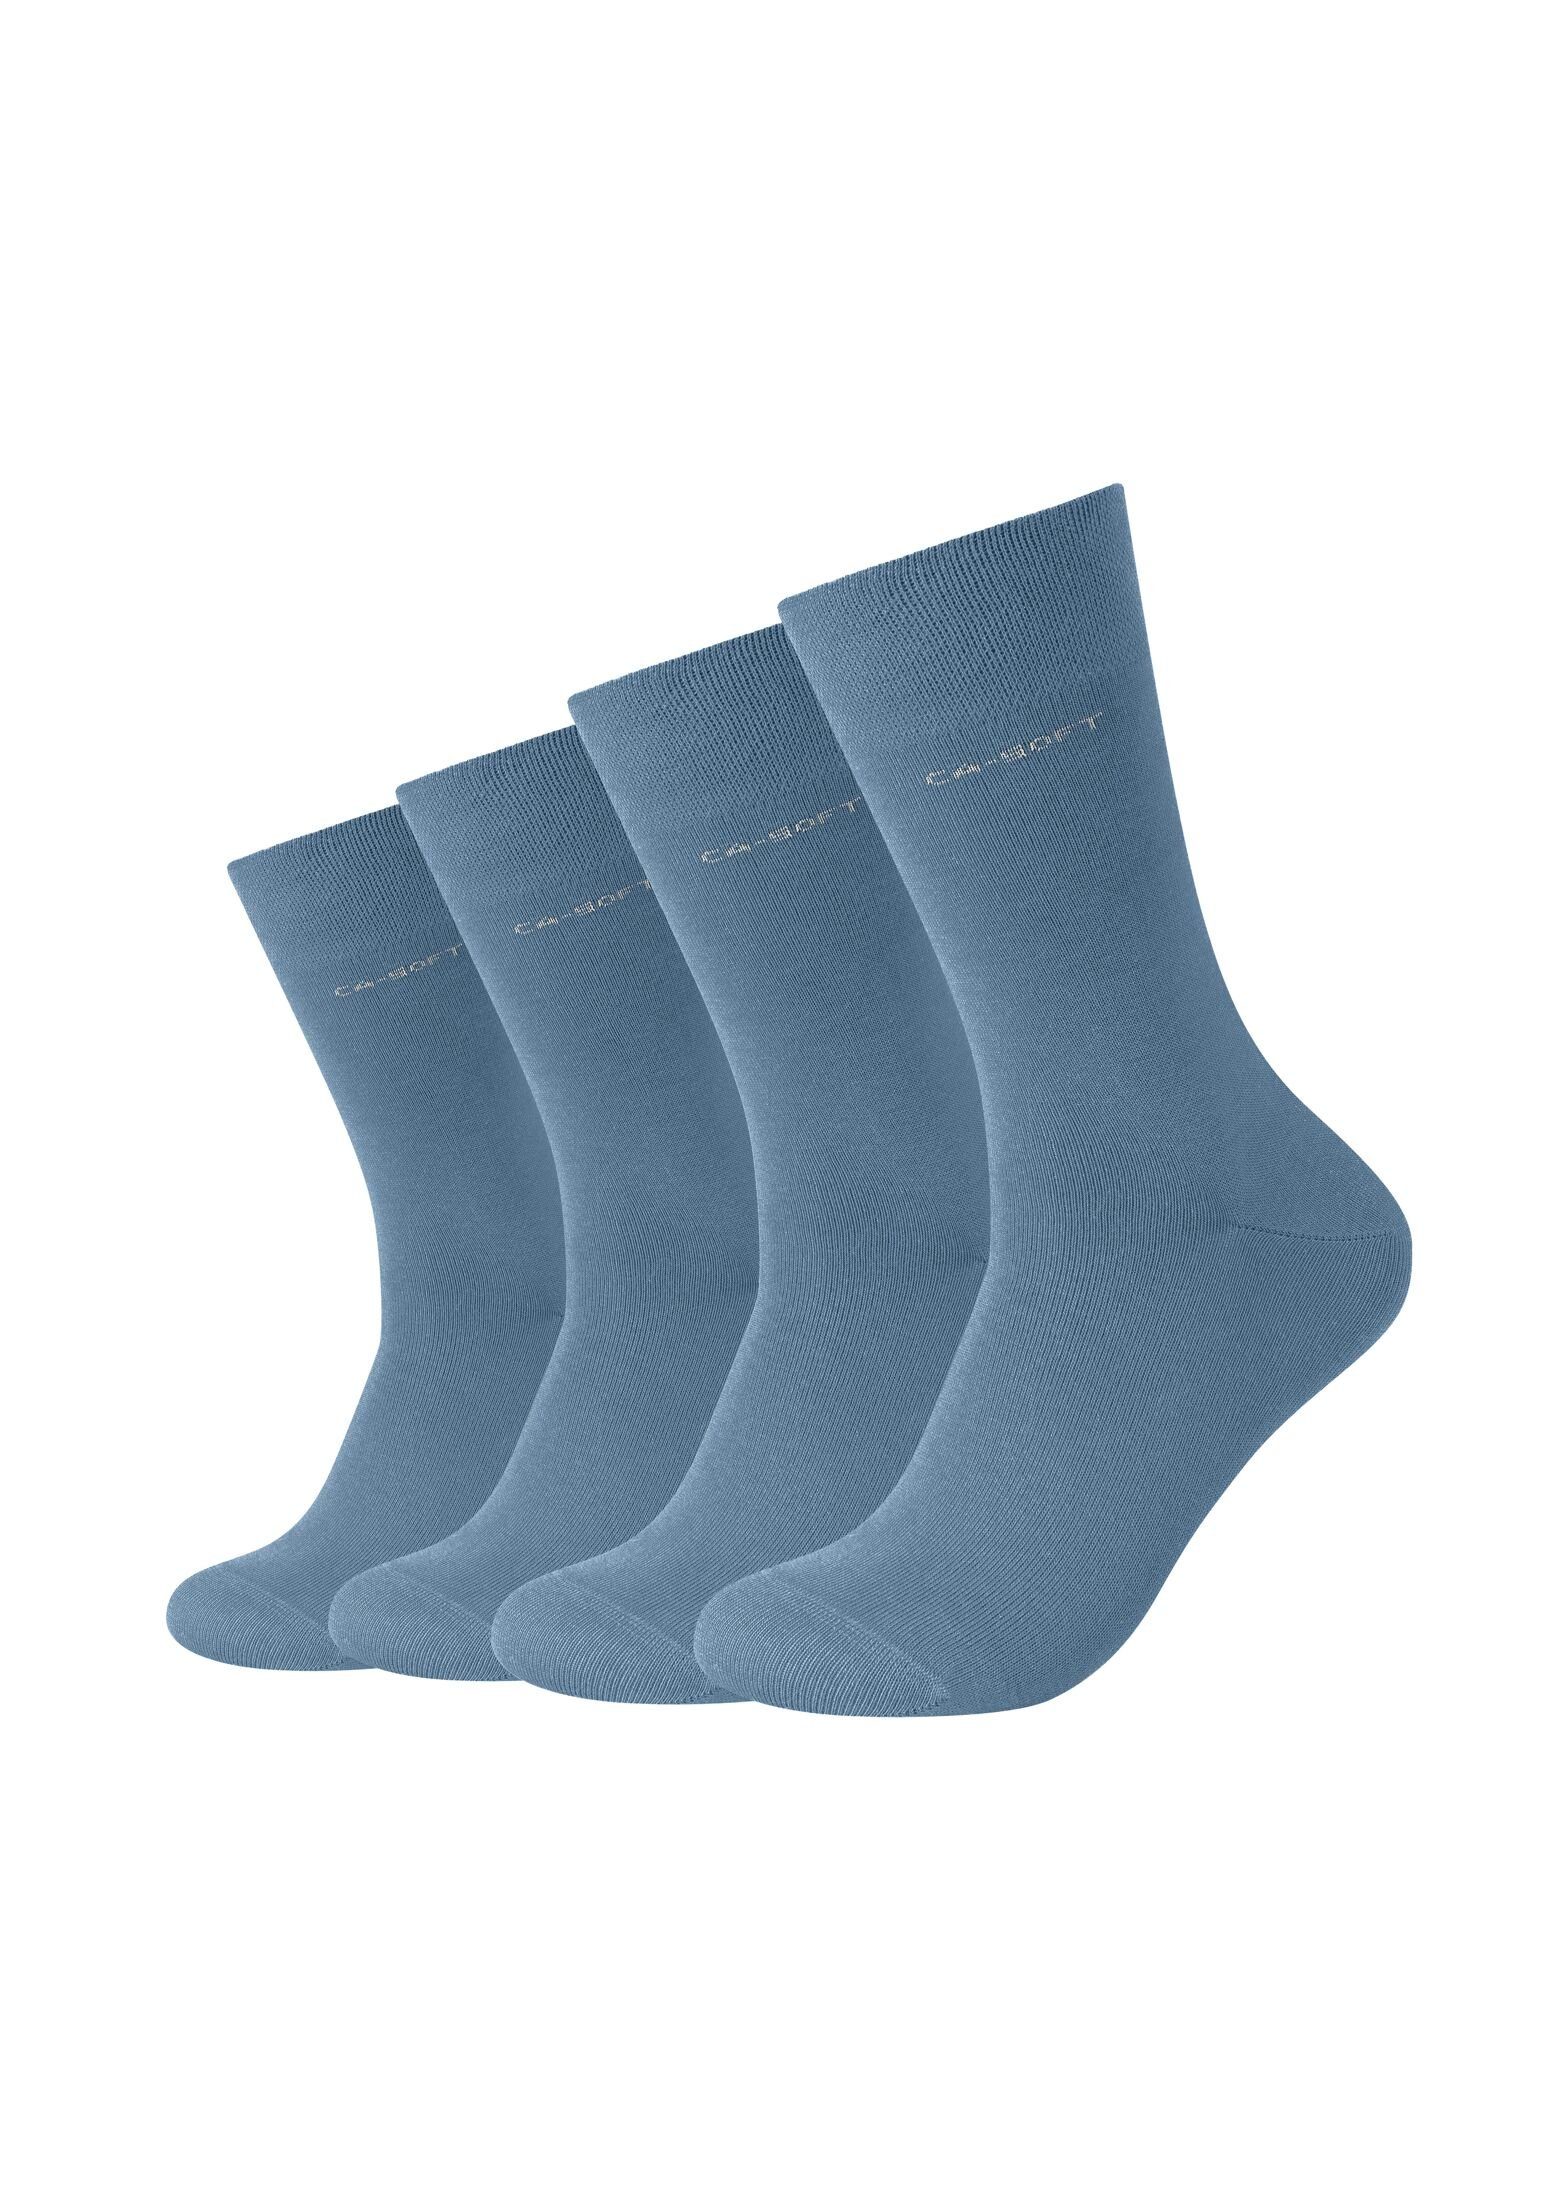 Camano Socken Herren blue Socken Bequem Komfortbund Businesssocken Damen und für captain's